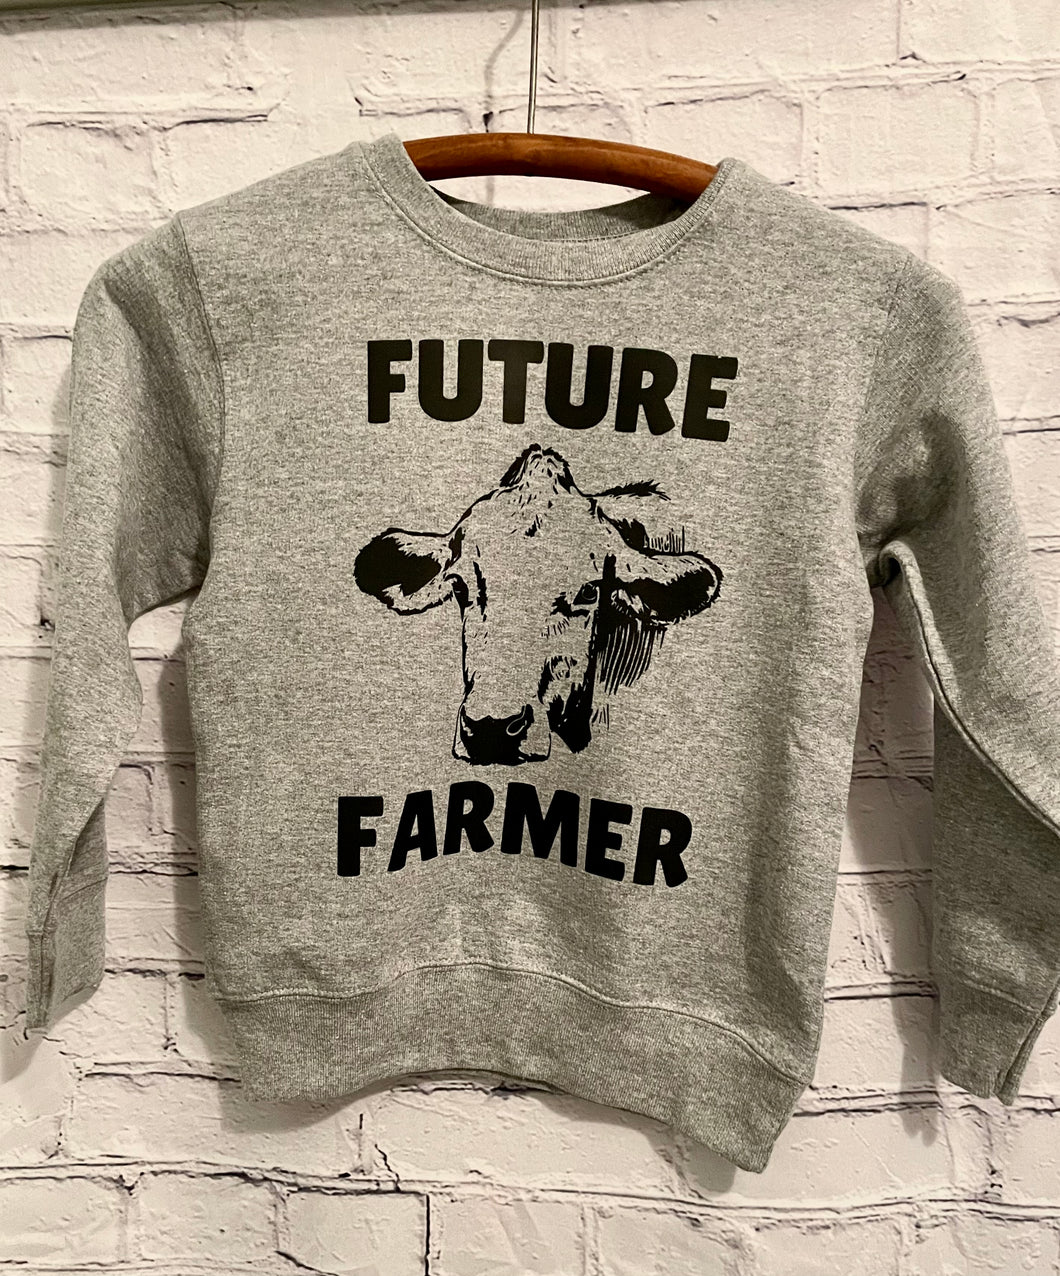 future farmer